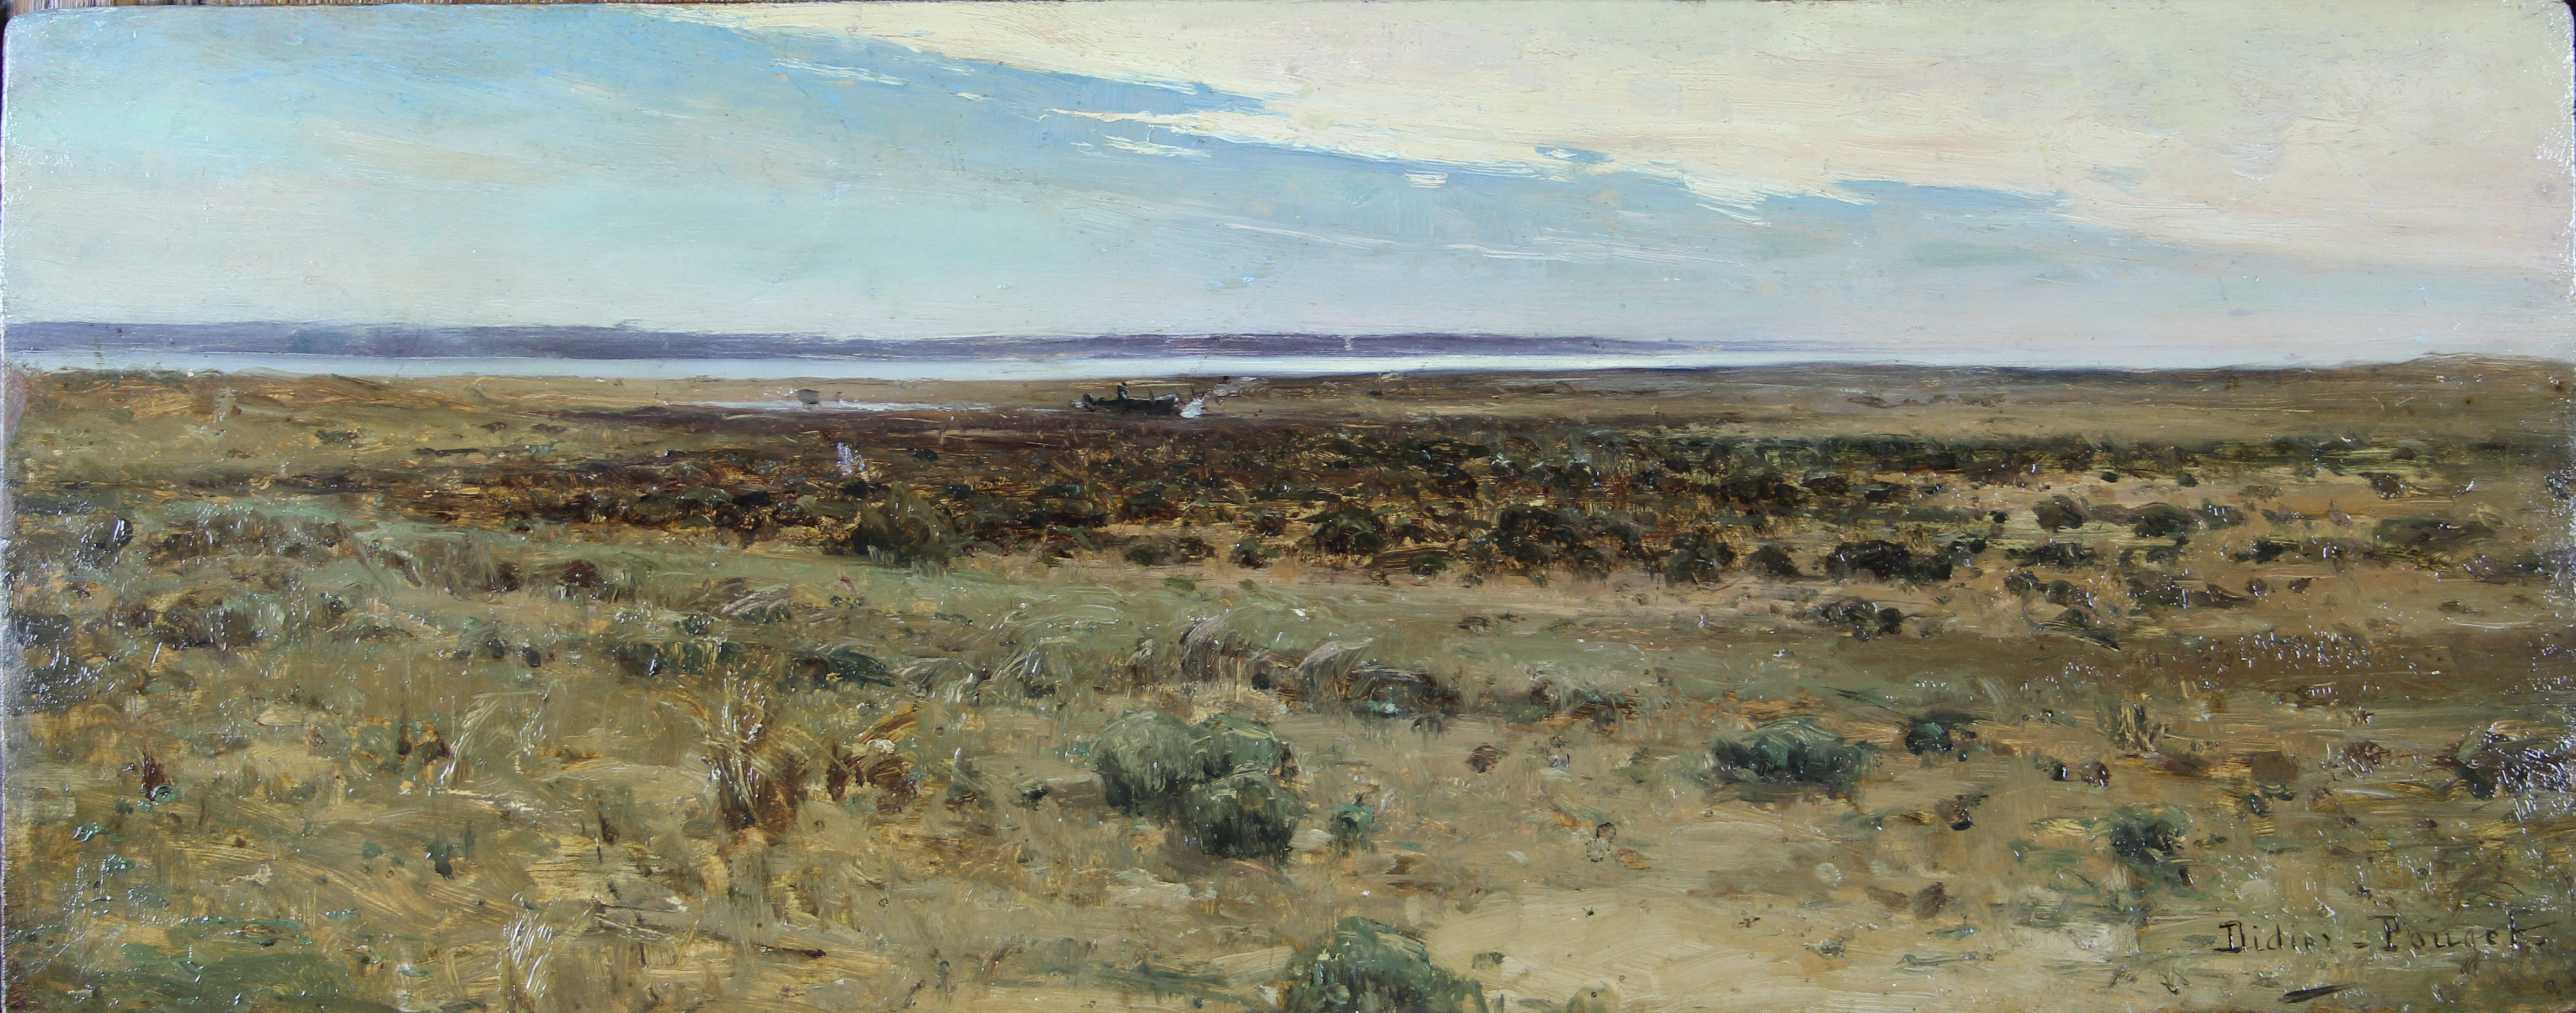 tableau L'estrant Didier-Pouget William marine,paysage impressionnisme huile panneau 1re moiti 20e sicle